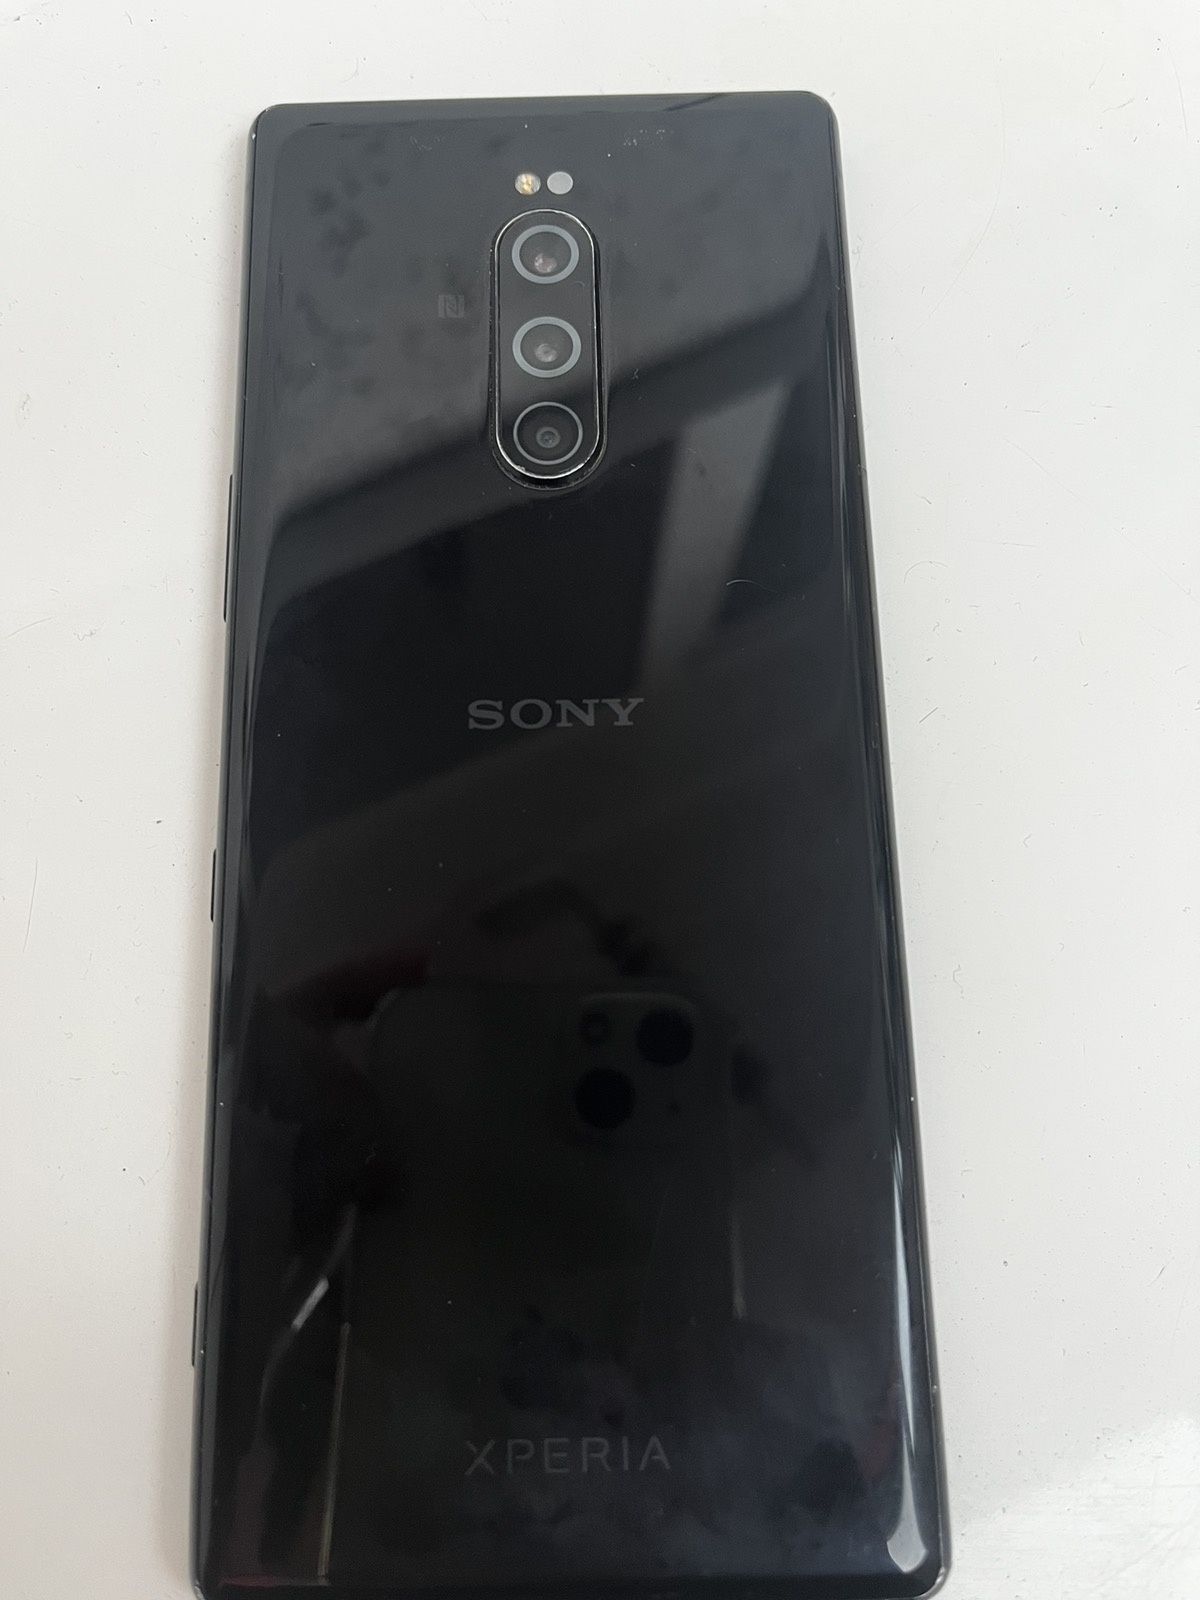 Sony Xperia 1 J9110 128GB